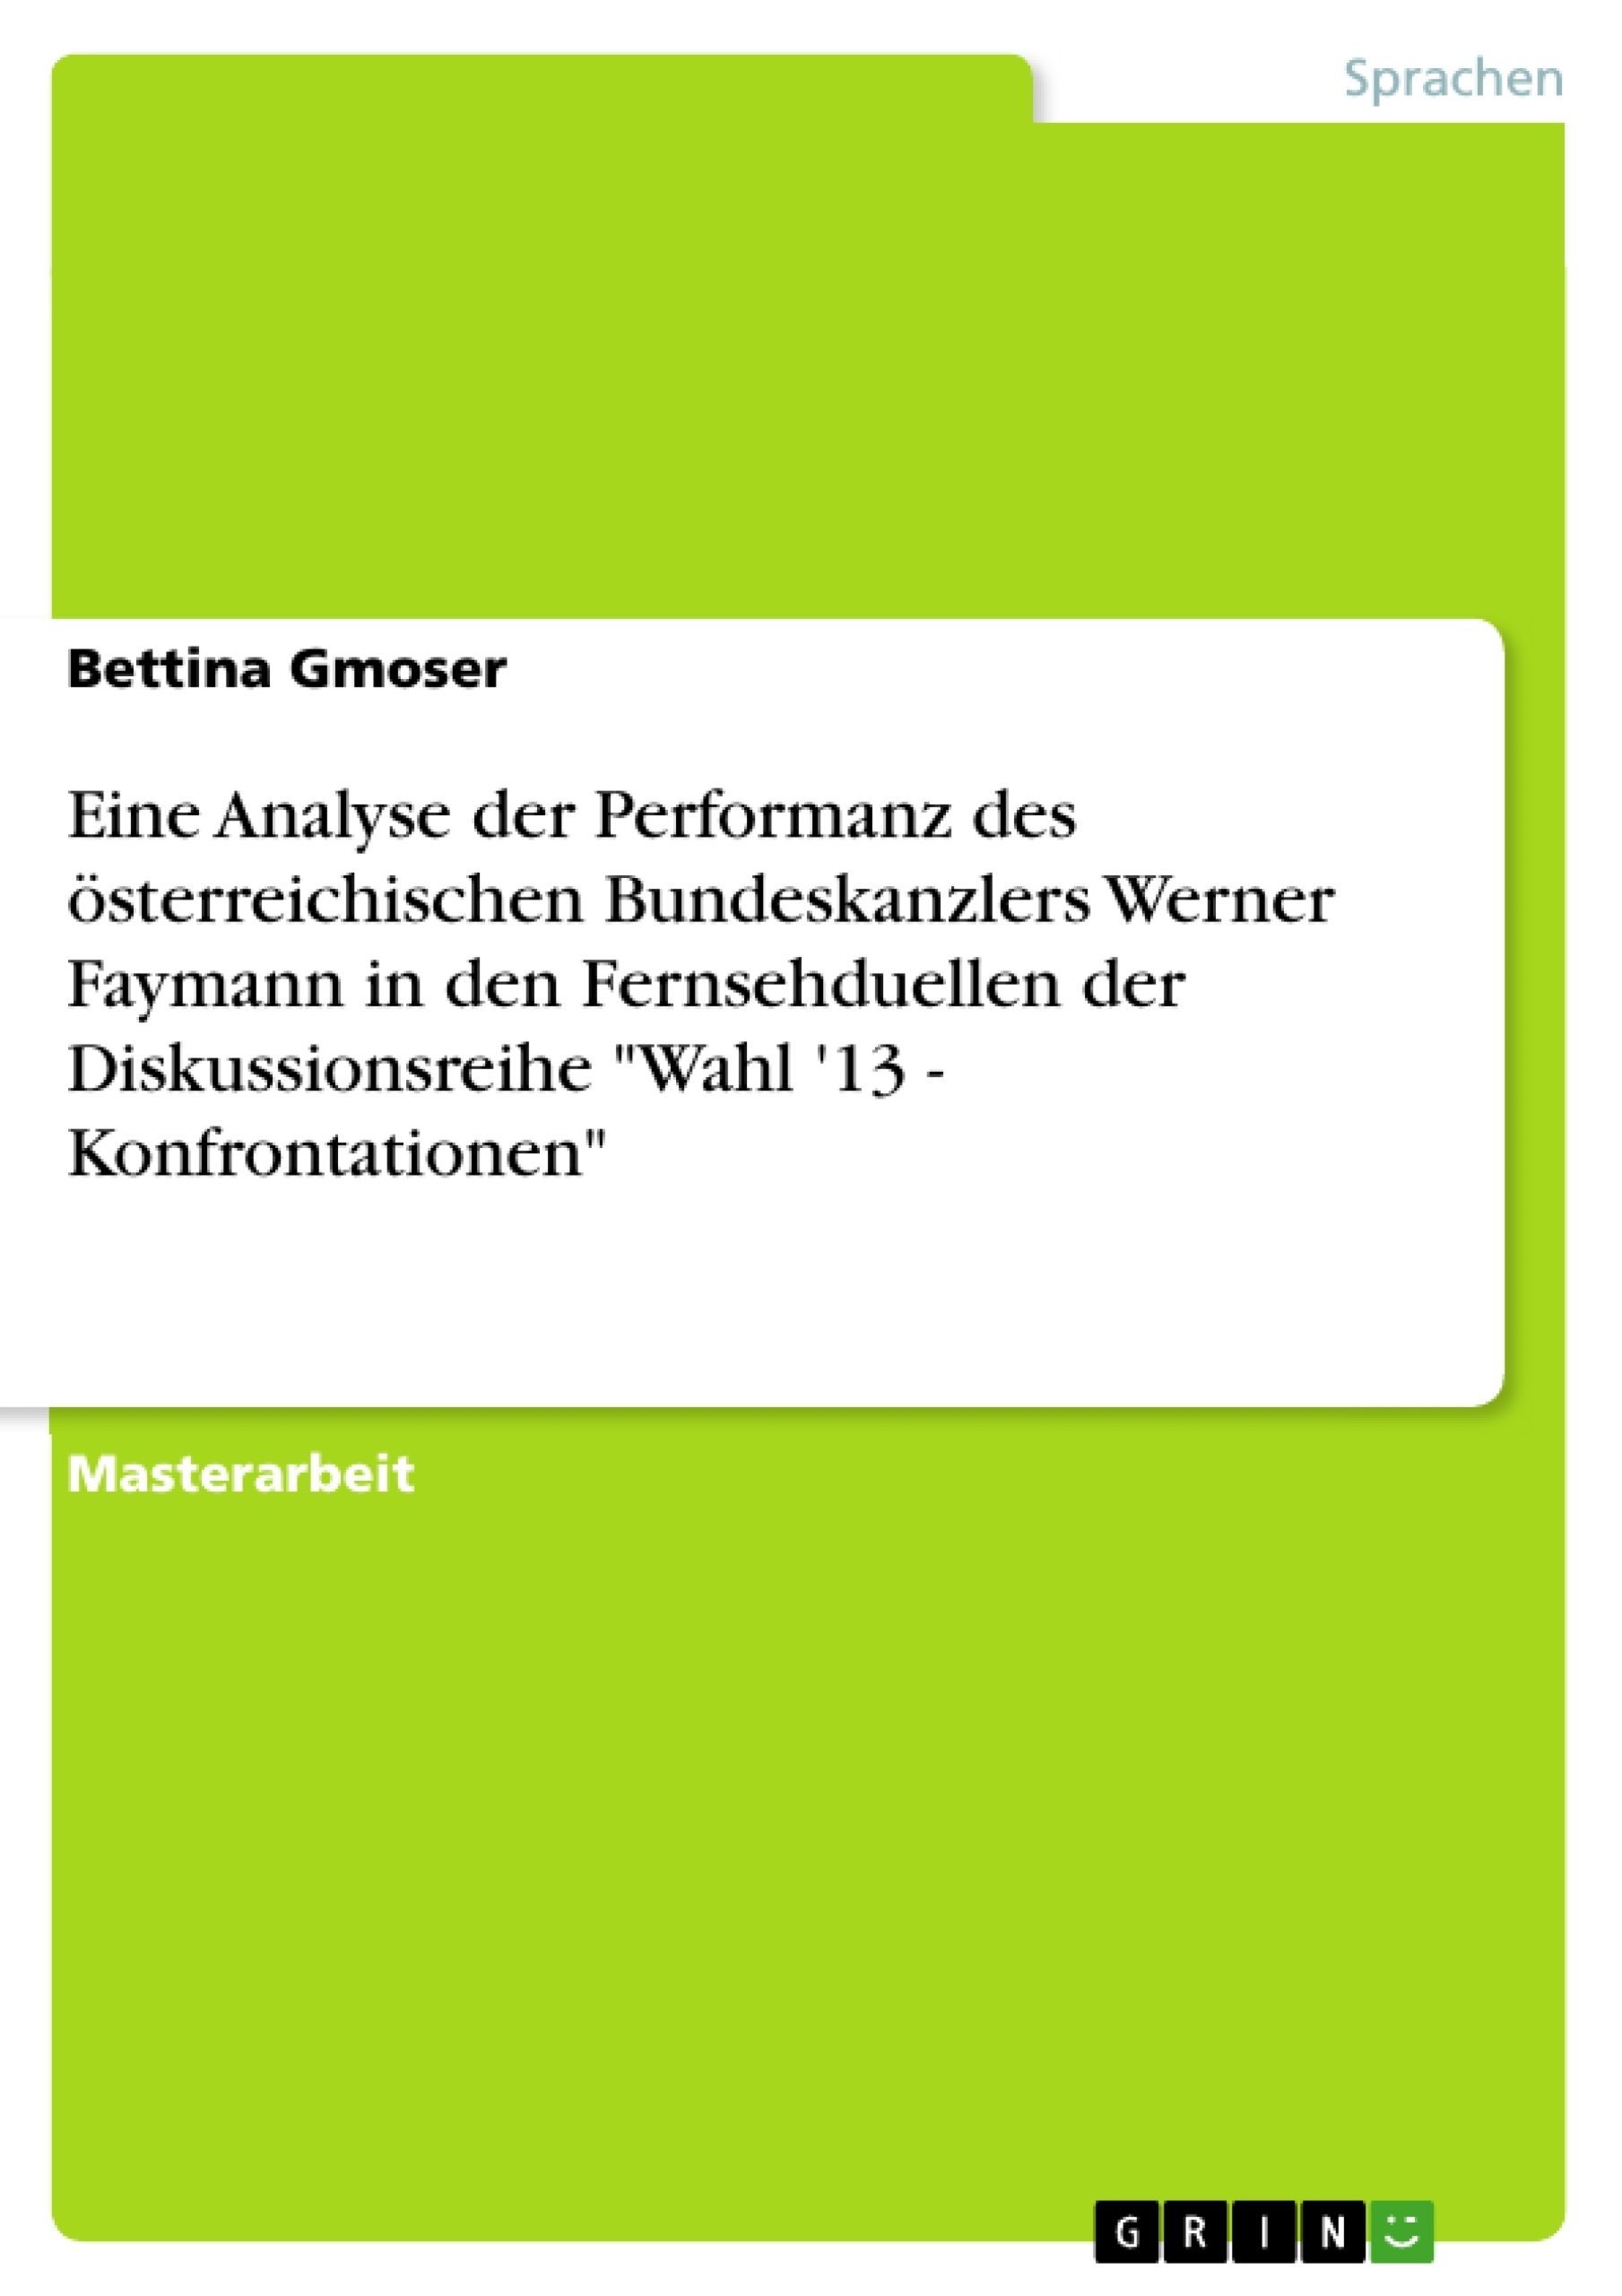 Title: Eine Analyse der Performanz des österreichischen Bundeskanzlers Werner Faymann in den Fernsehduellen der Diskussionsreihe "Wahl '13 - Konfrontationen"